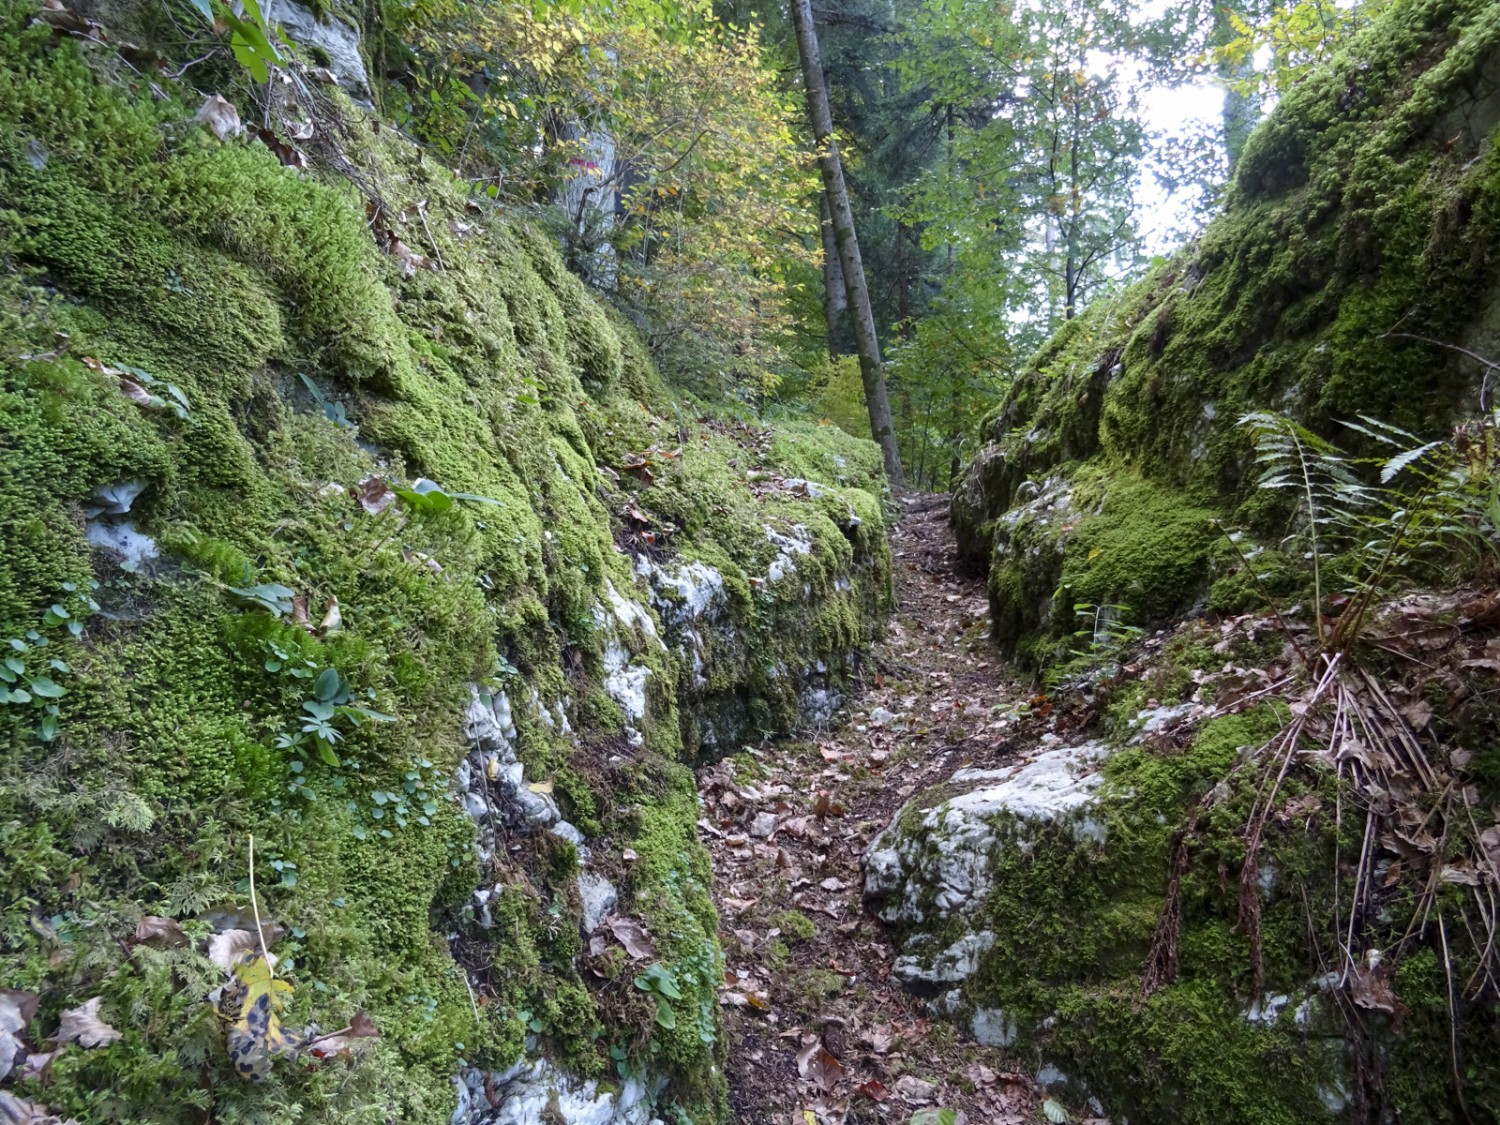 Typique du Jura : le sentier étroit se serpente à travers des rochers couverts de mousse. Bild: Sabine Joss